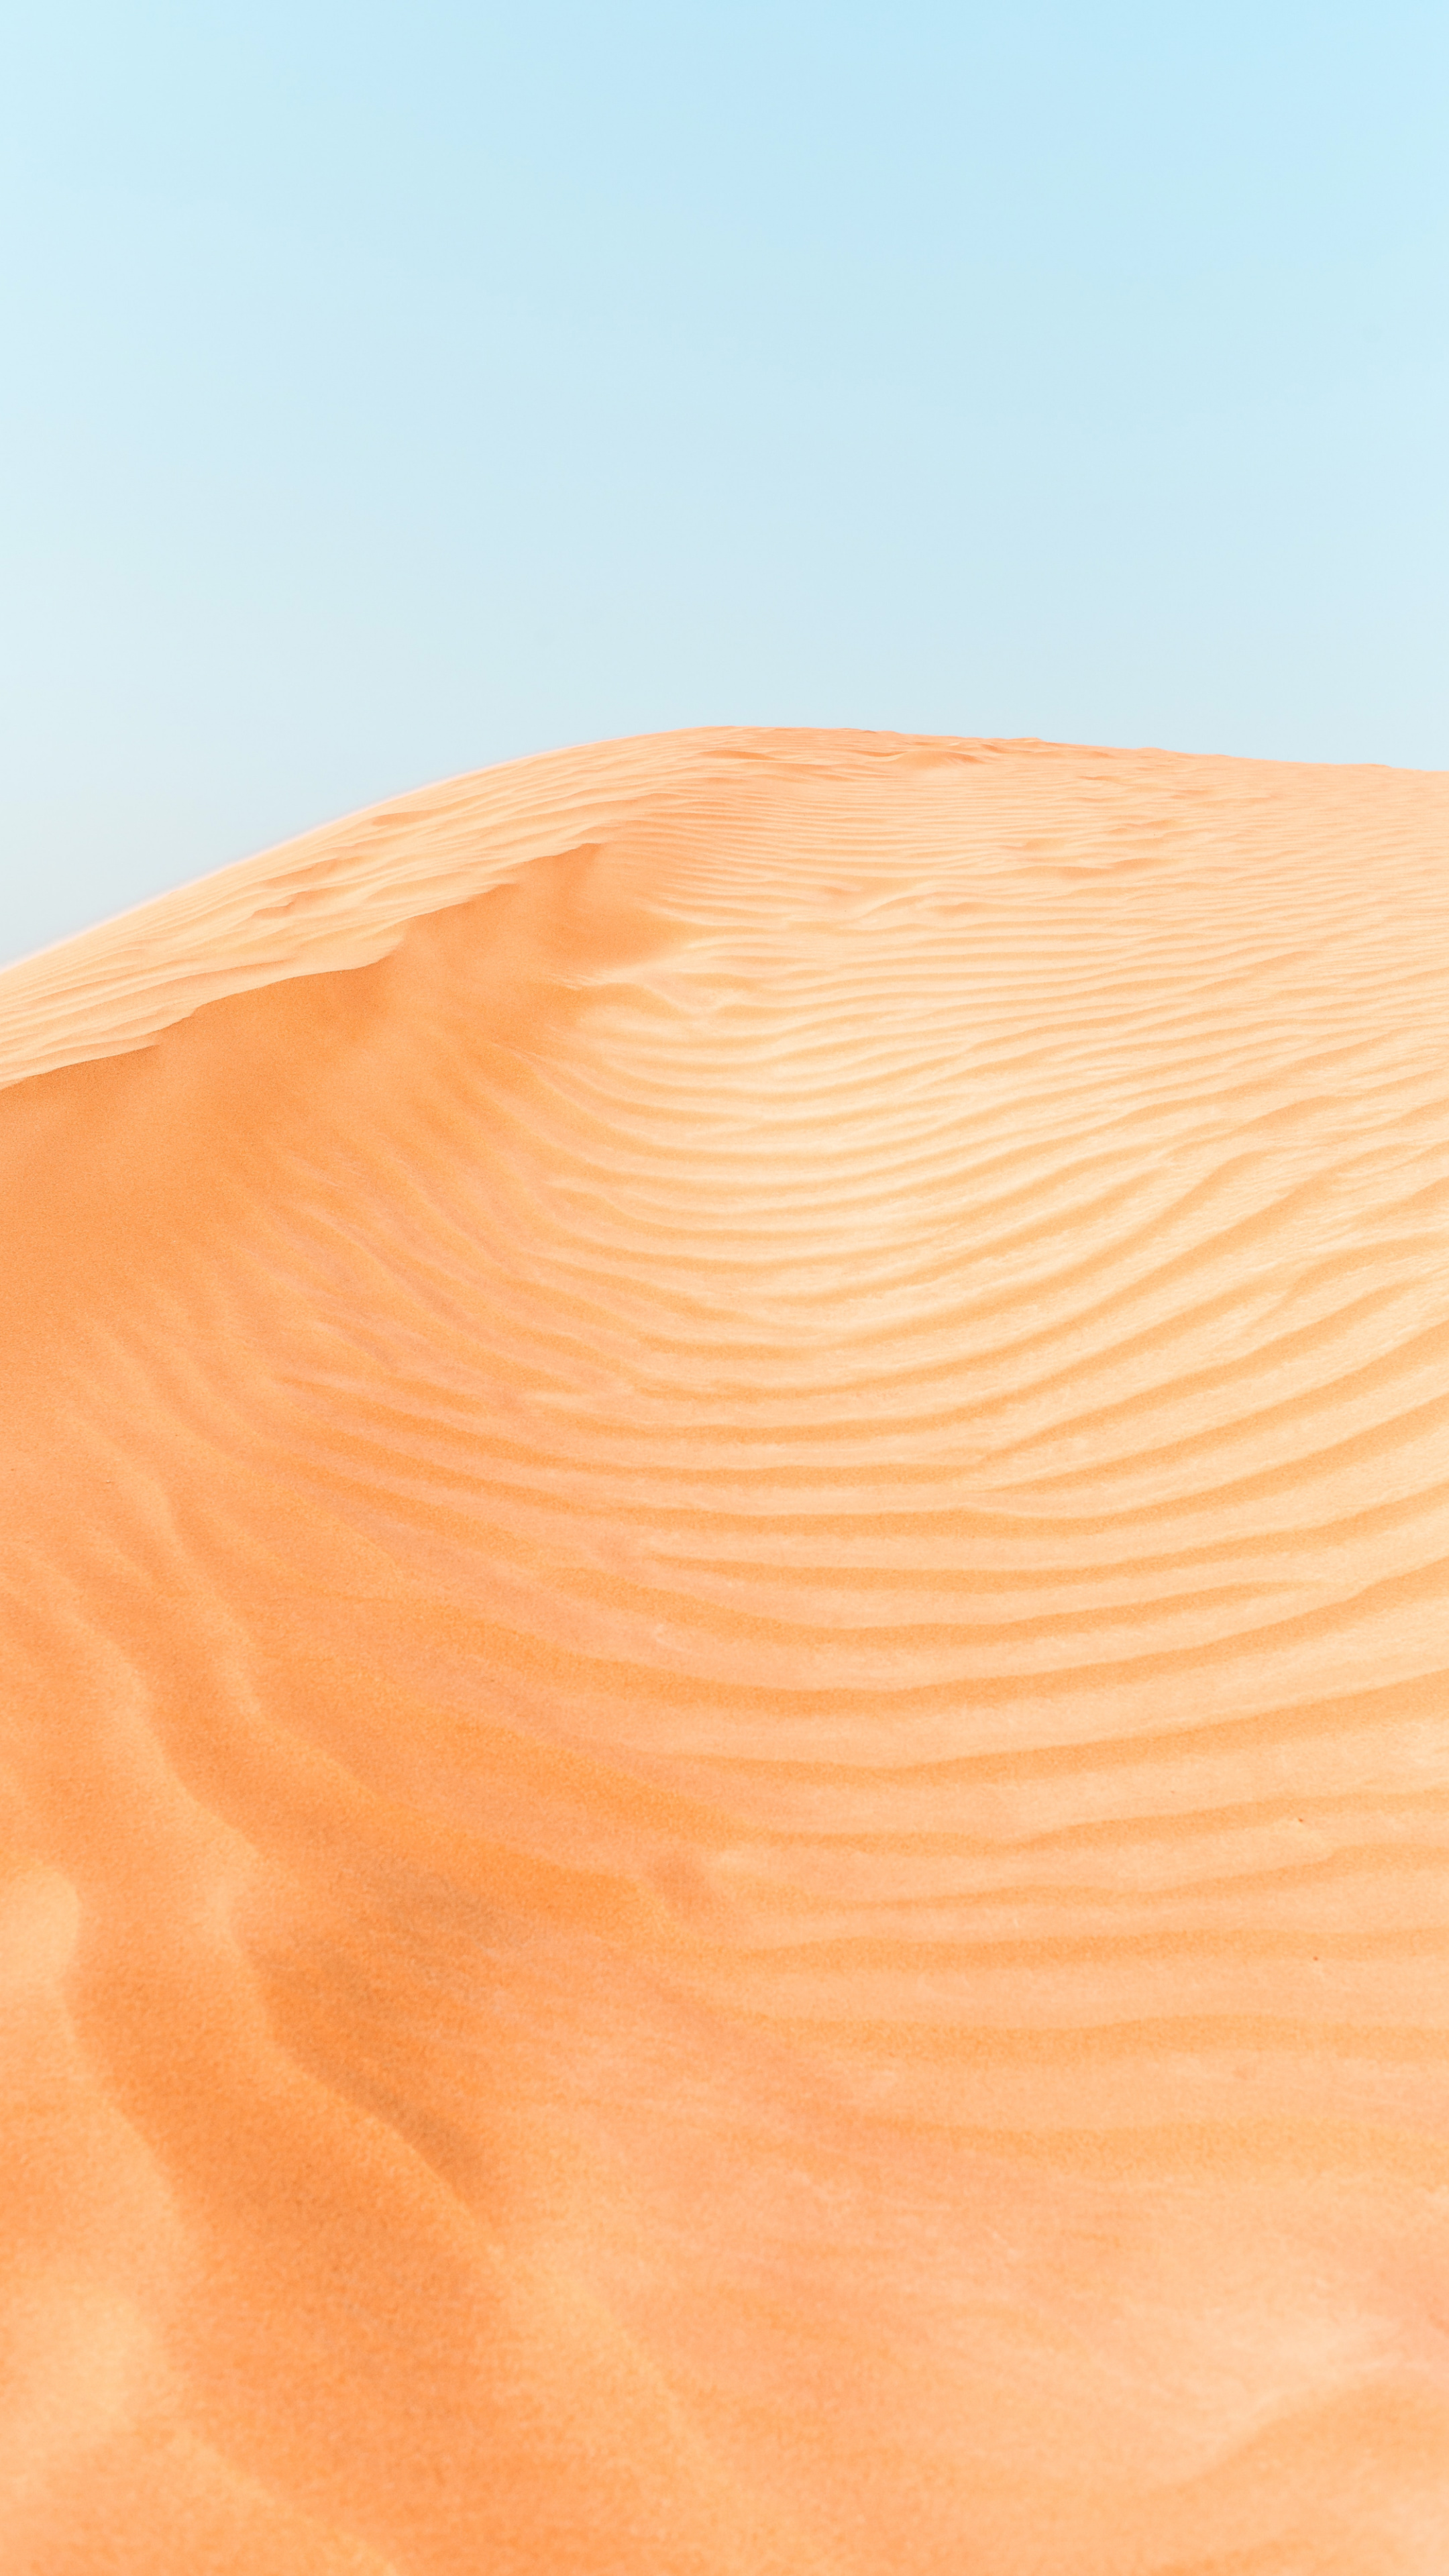 荒凉的沙漠风景个性手机壁纸